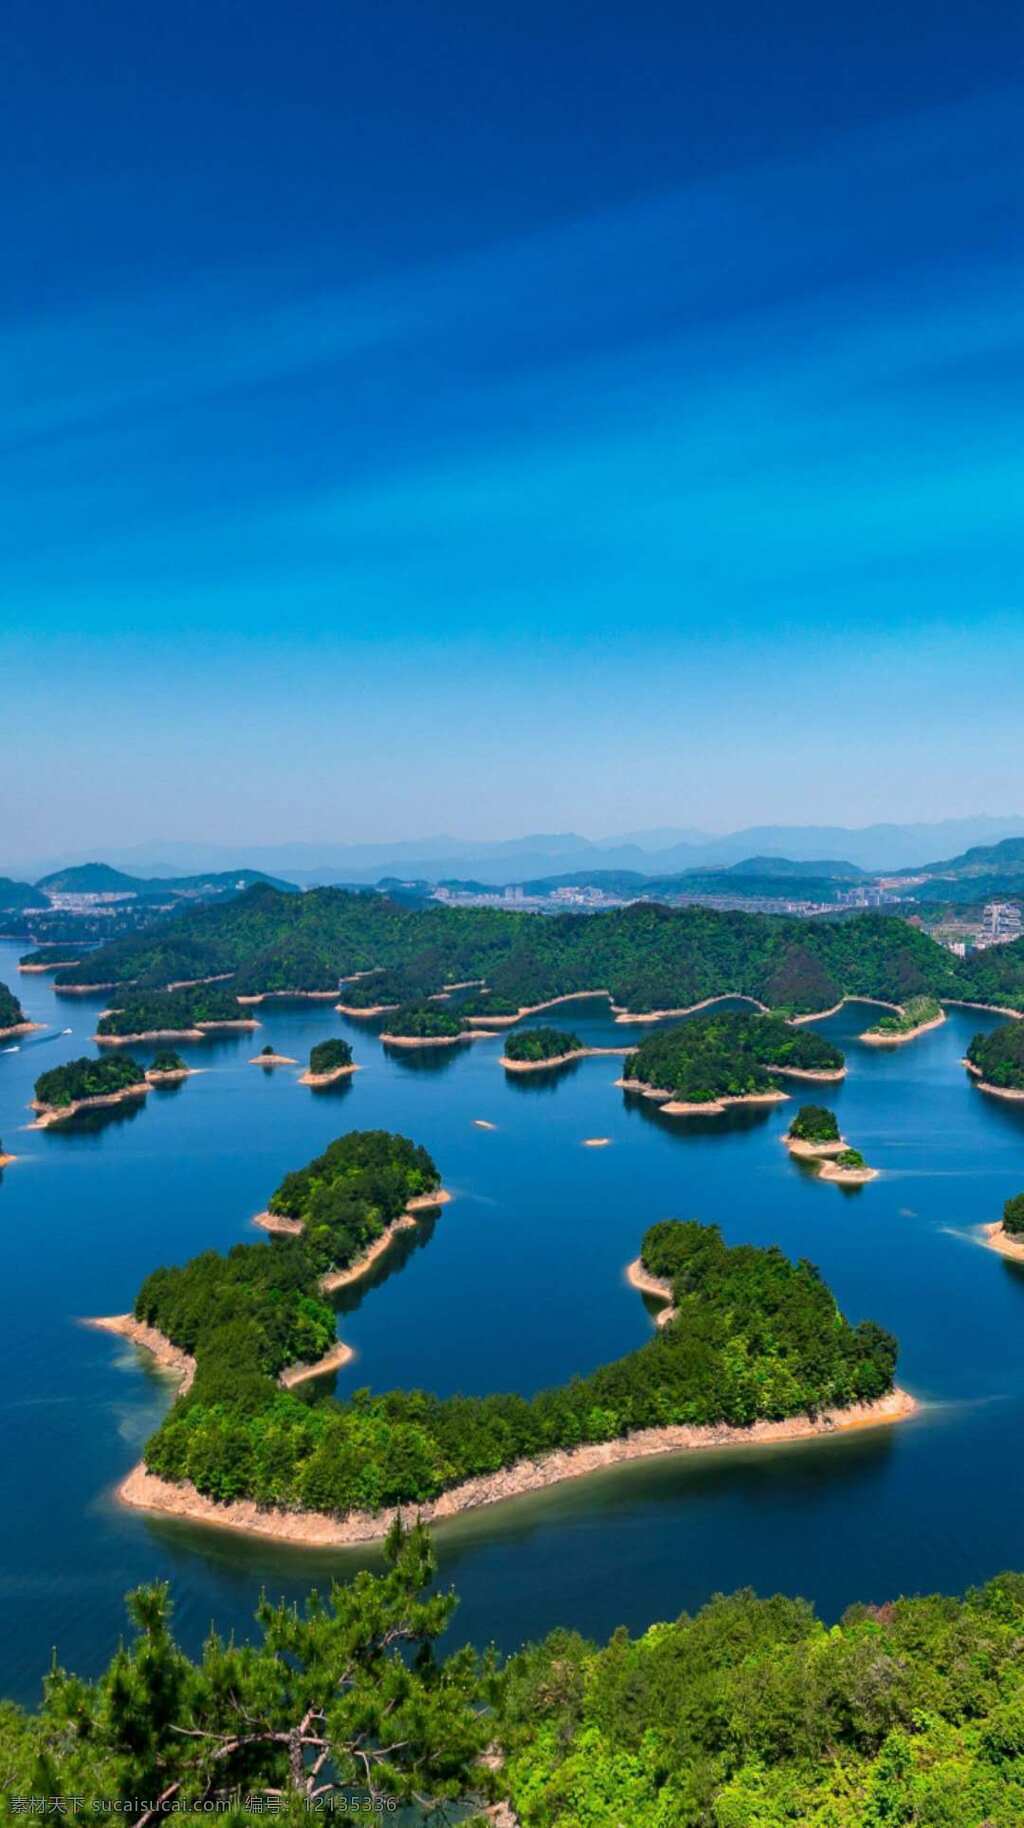 美丽的湖泊 壮观的湖泊 蓝天 远山 山脉 山峰 绿山 碧蓝的湖水 绿色的岛屿 千岛湖 自然景观 山水风景